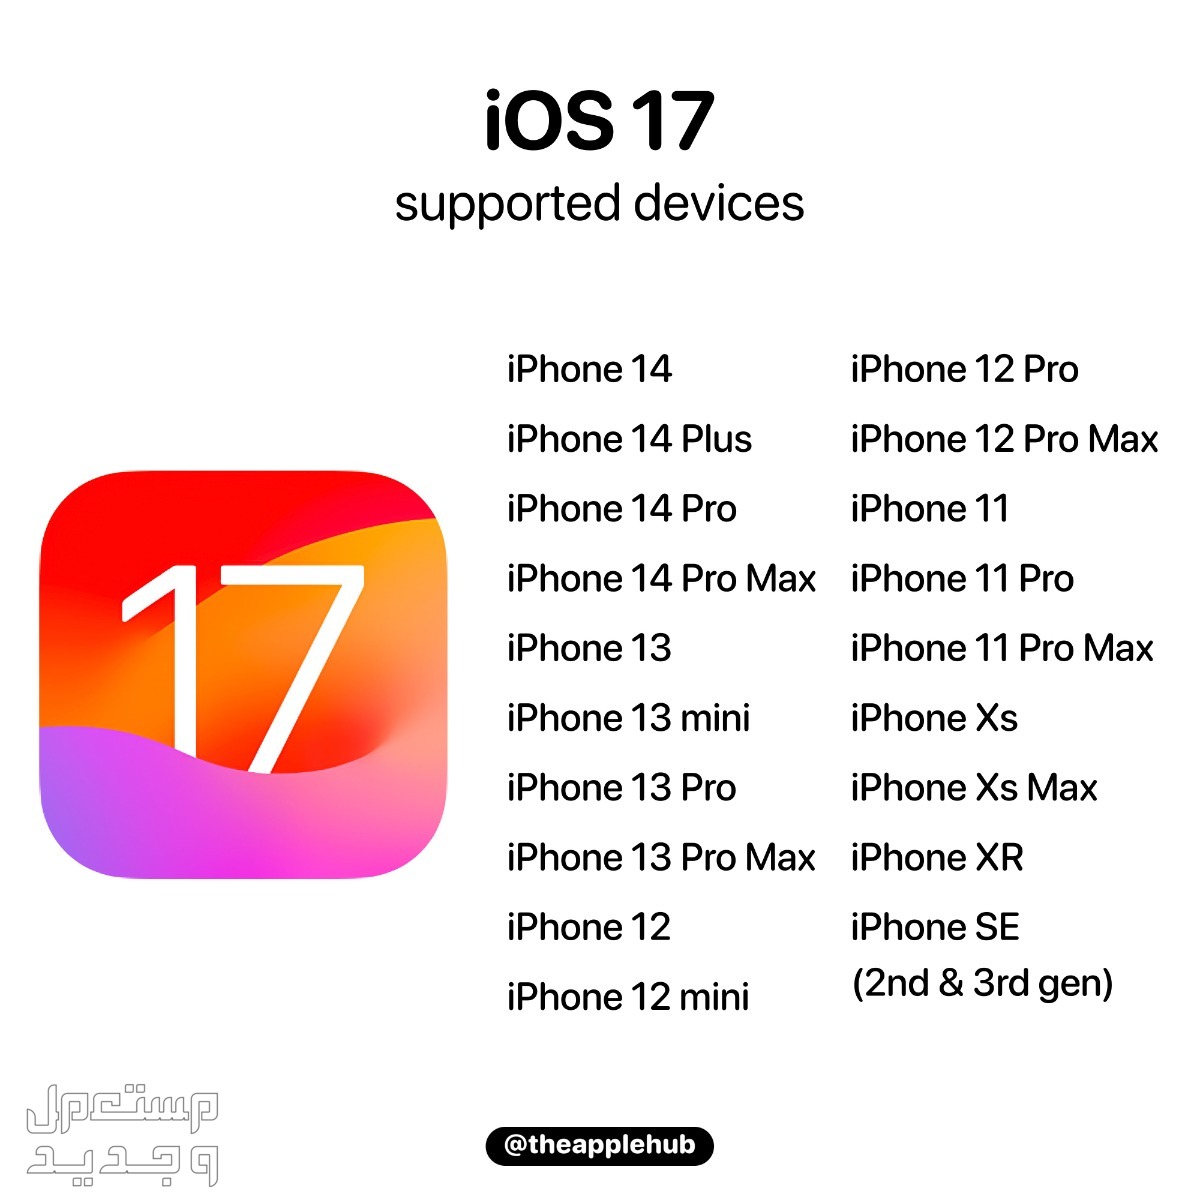 نظام iOS 17 لهواتف ايفون بمميزات جديدة تعرف عليها في لبنان